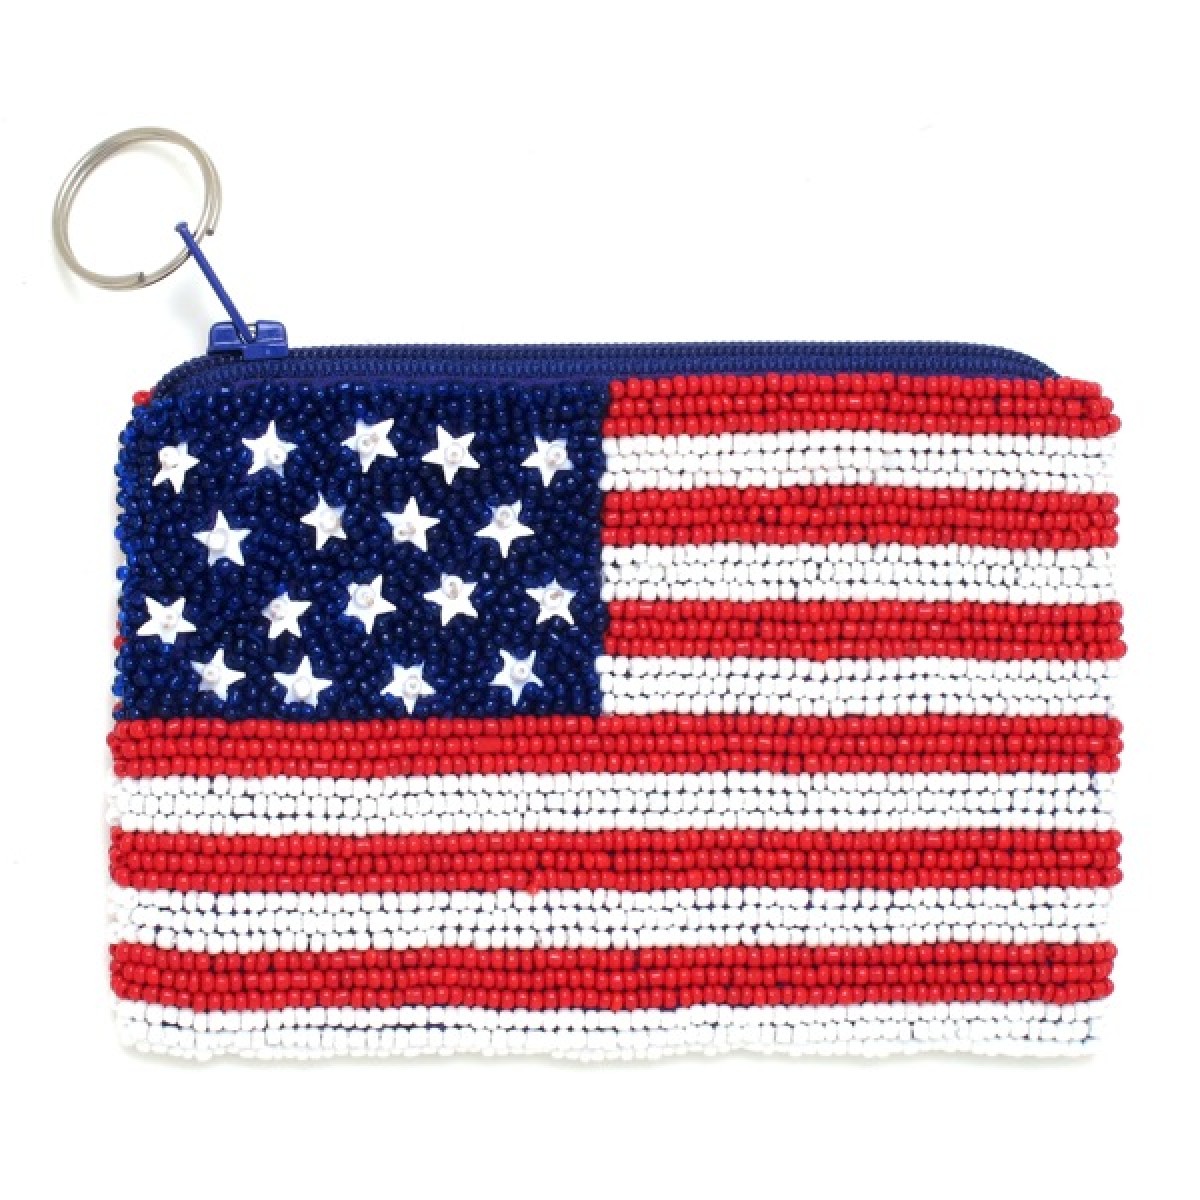 US Flag Bag